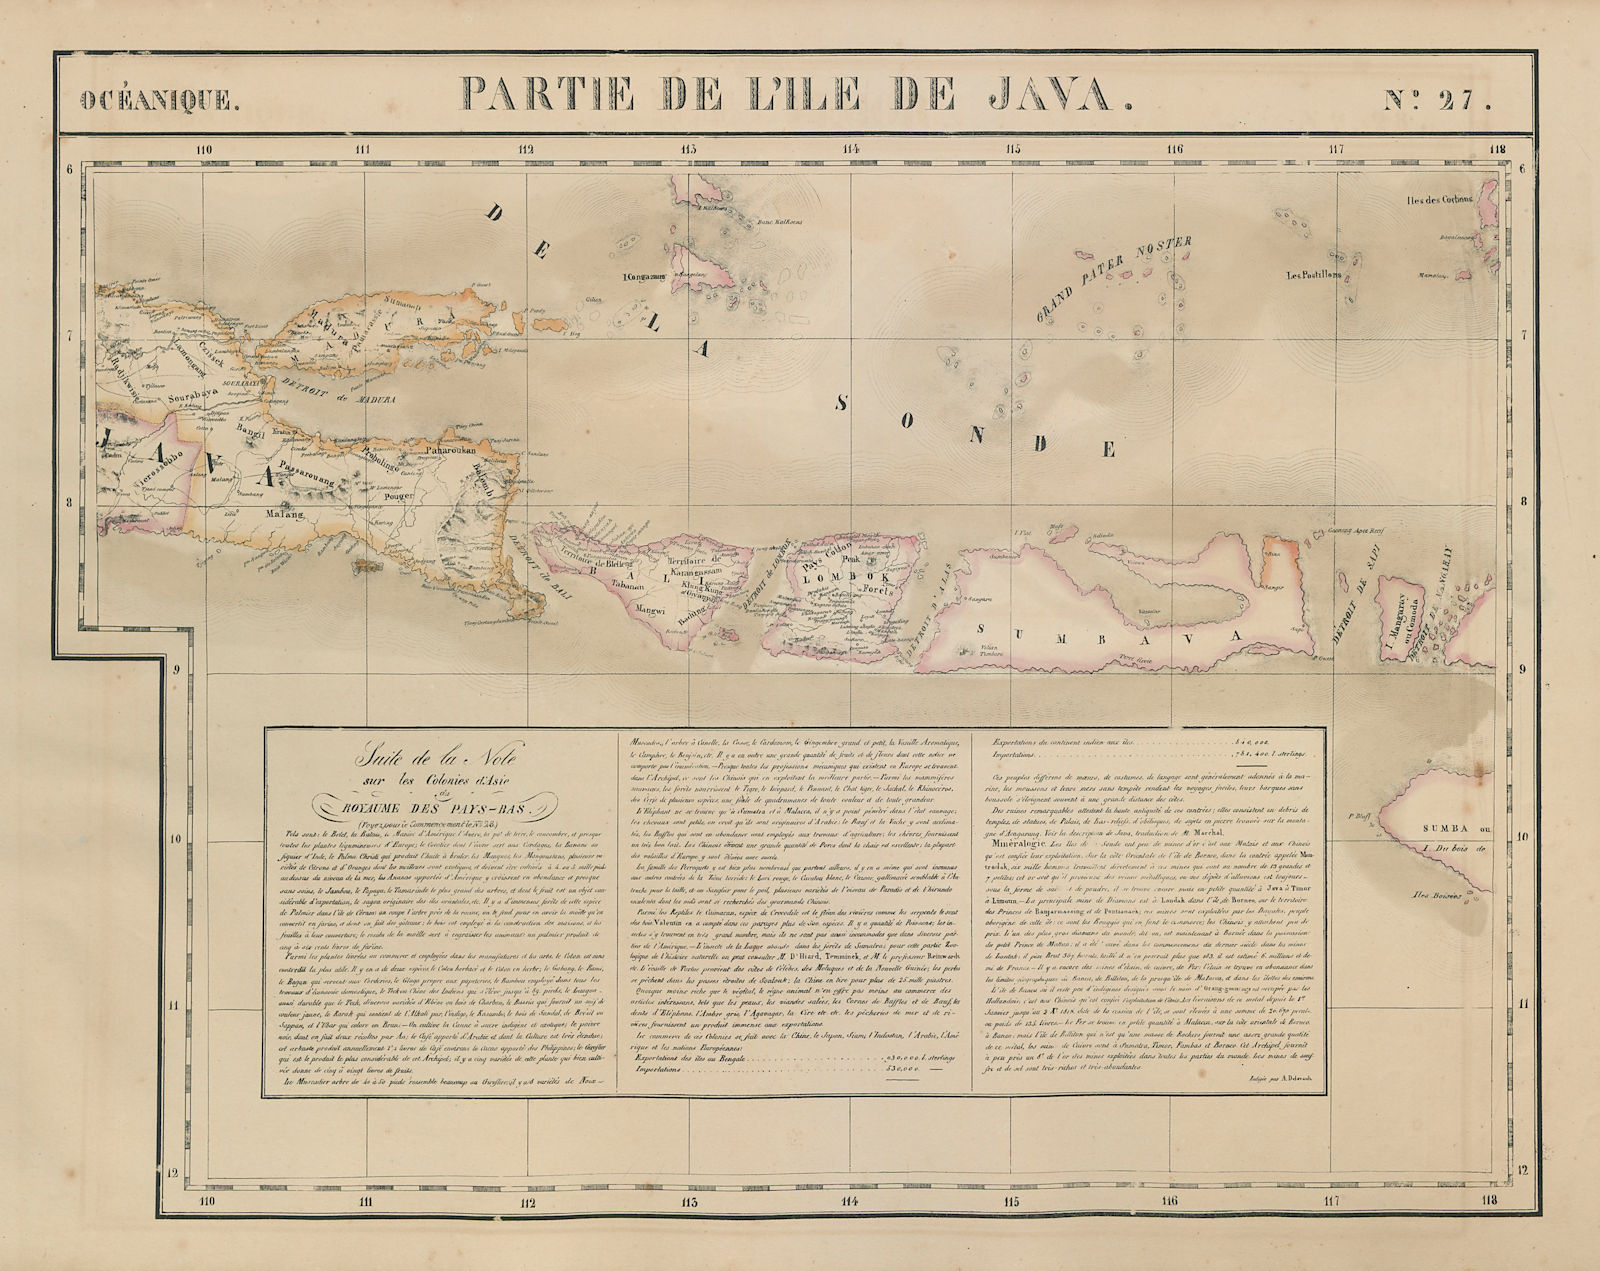 Associate Product Océanique. Partie de l'ile de Java #27 Bali Lombok Sumbawa VANDERMAELEN 1827 map